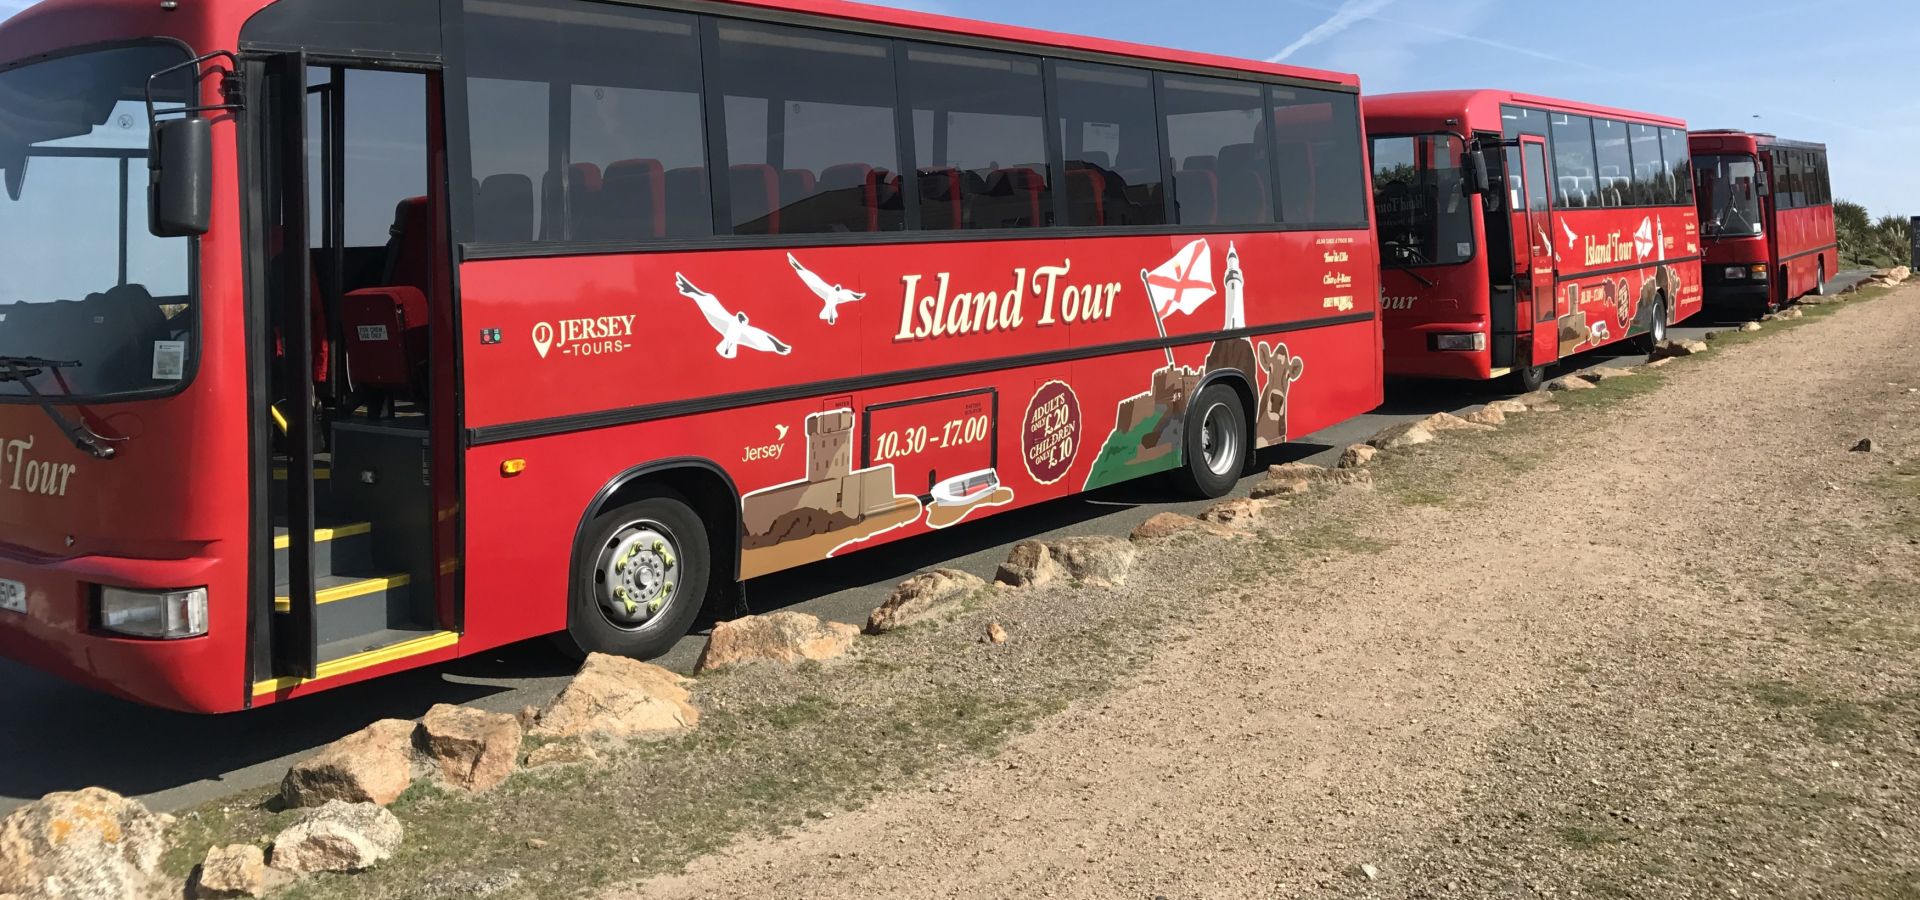 Jersey Bus & Coach Tours